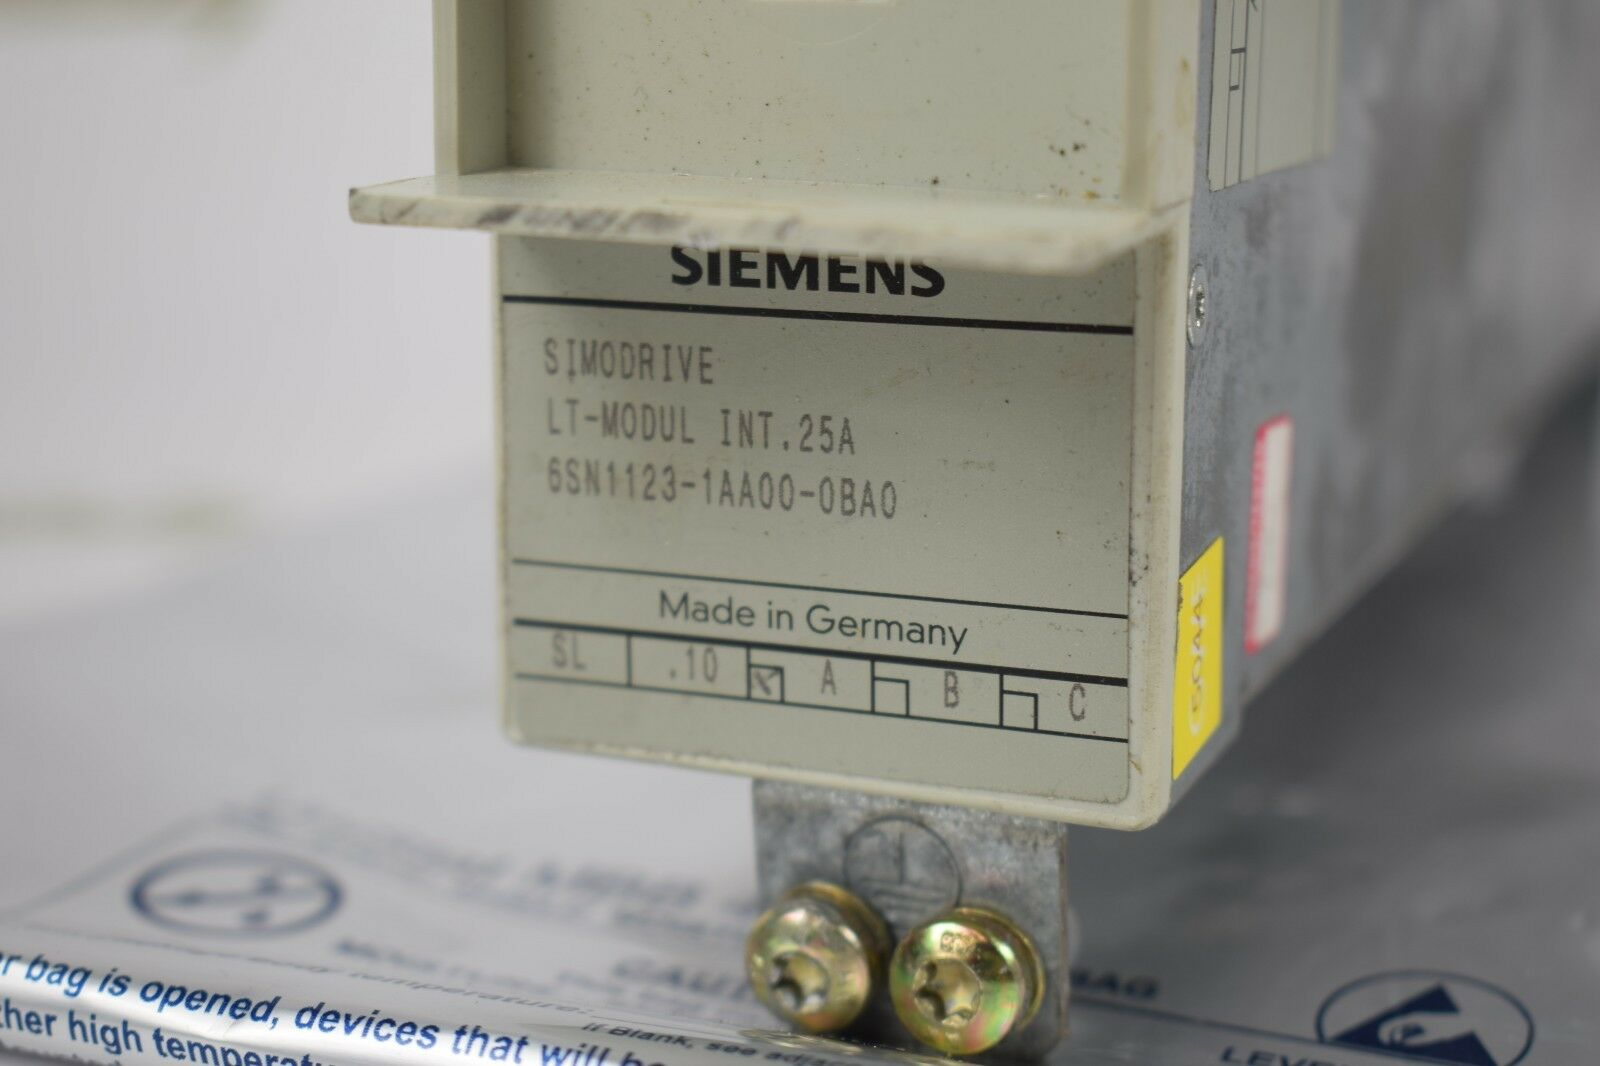 Siemens simodrive LT-Modul Int. 25A 6SN1123-1AA00-0BA0 ( 6SN1 123-1AA00-0BA0 )